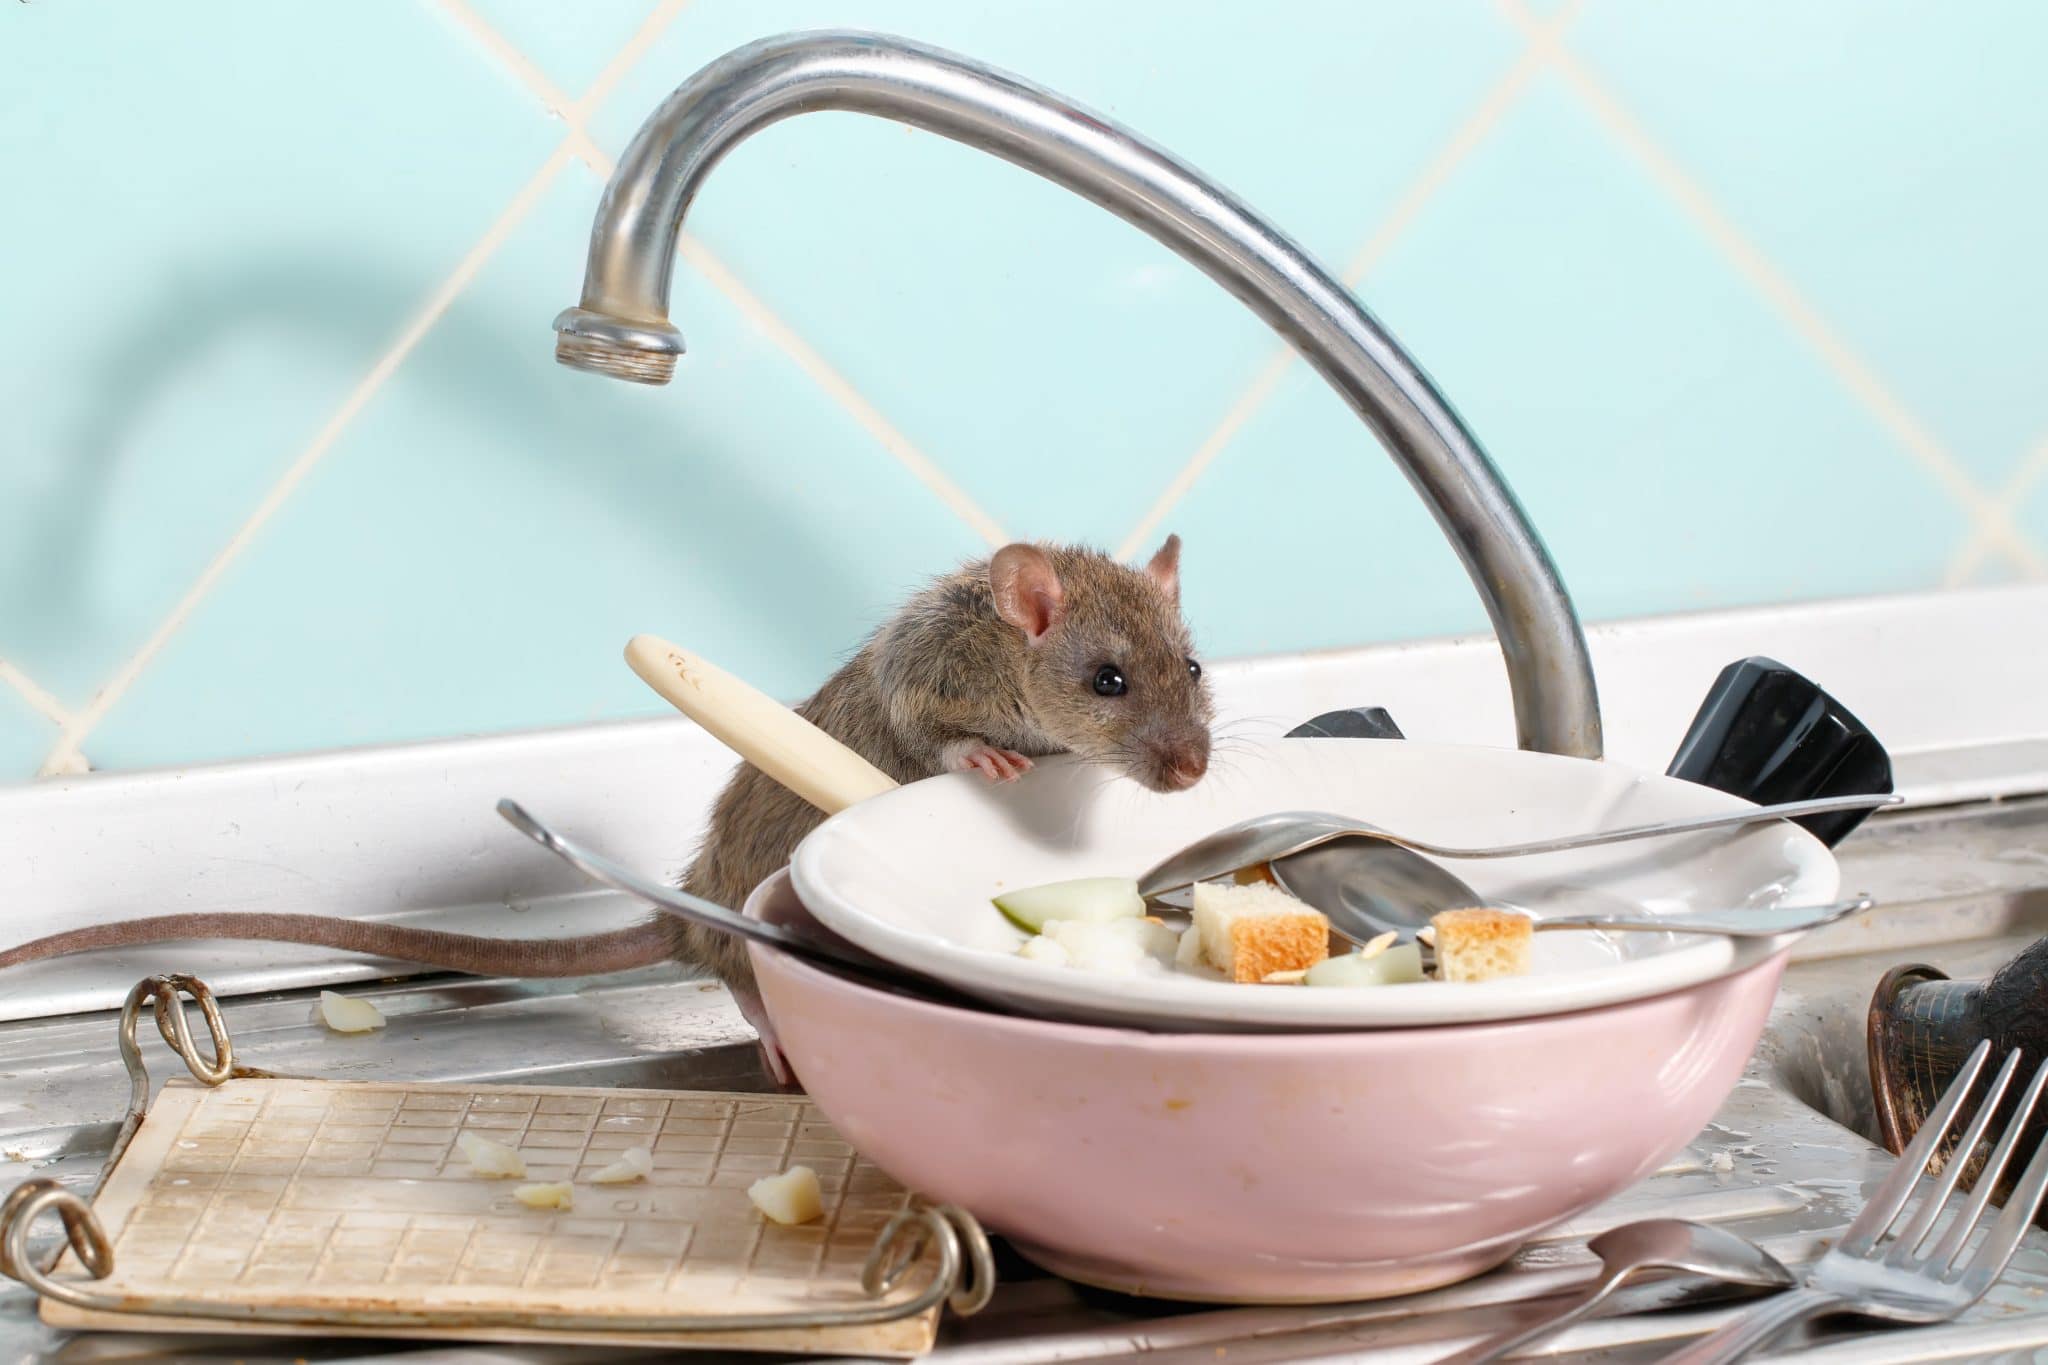 Construcciones: un potencial hogar para los ratones. - Rentokil Blog